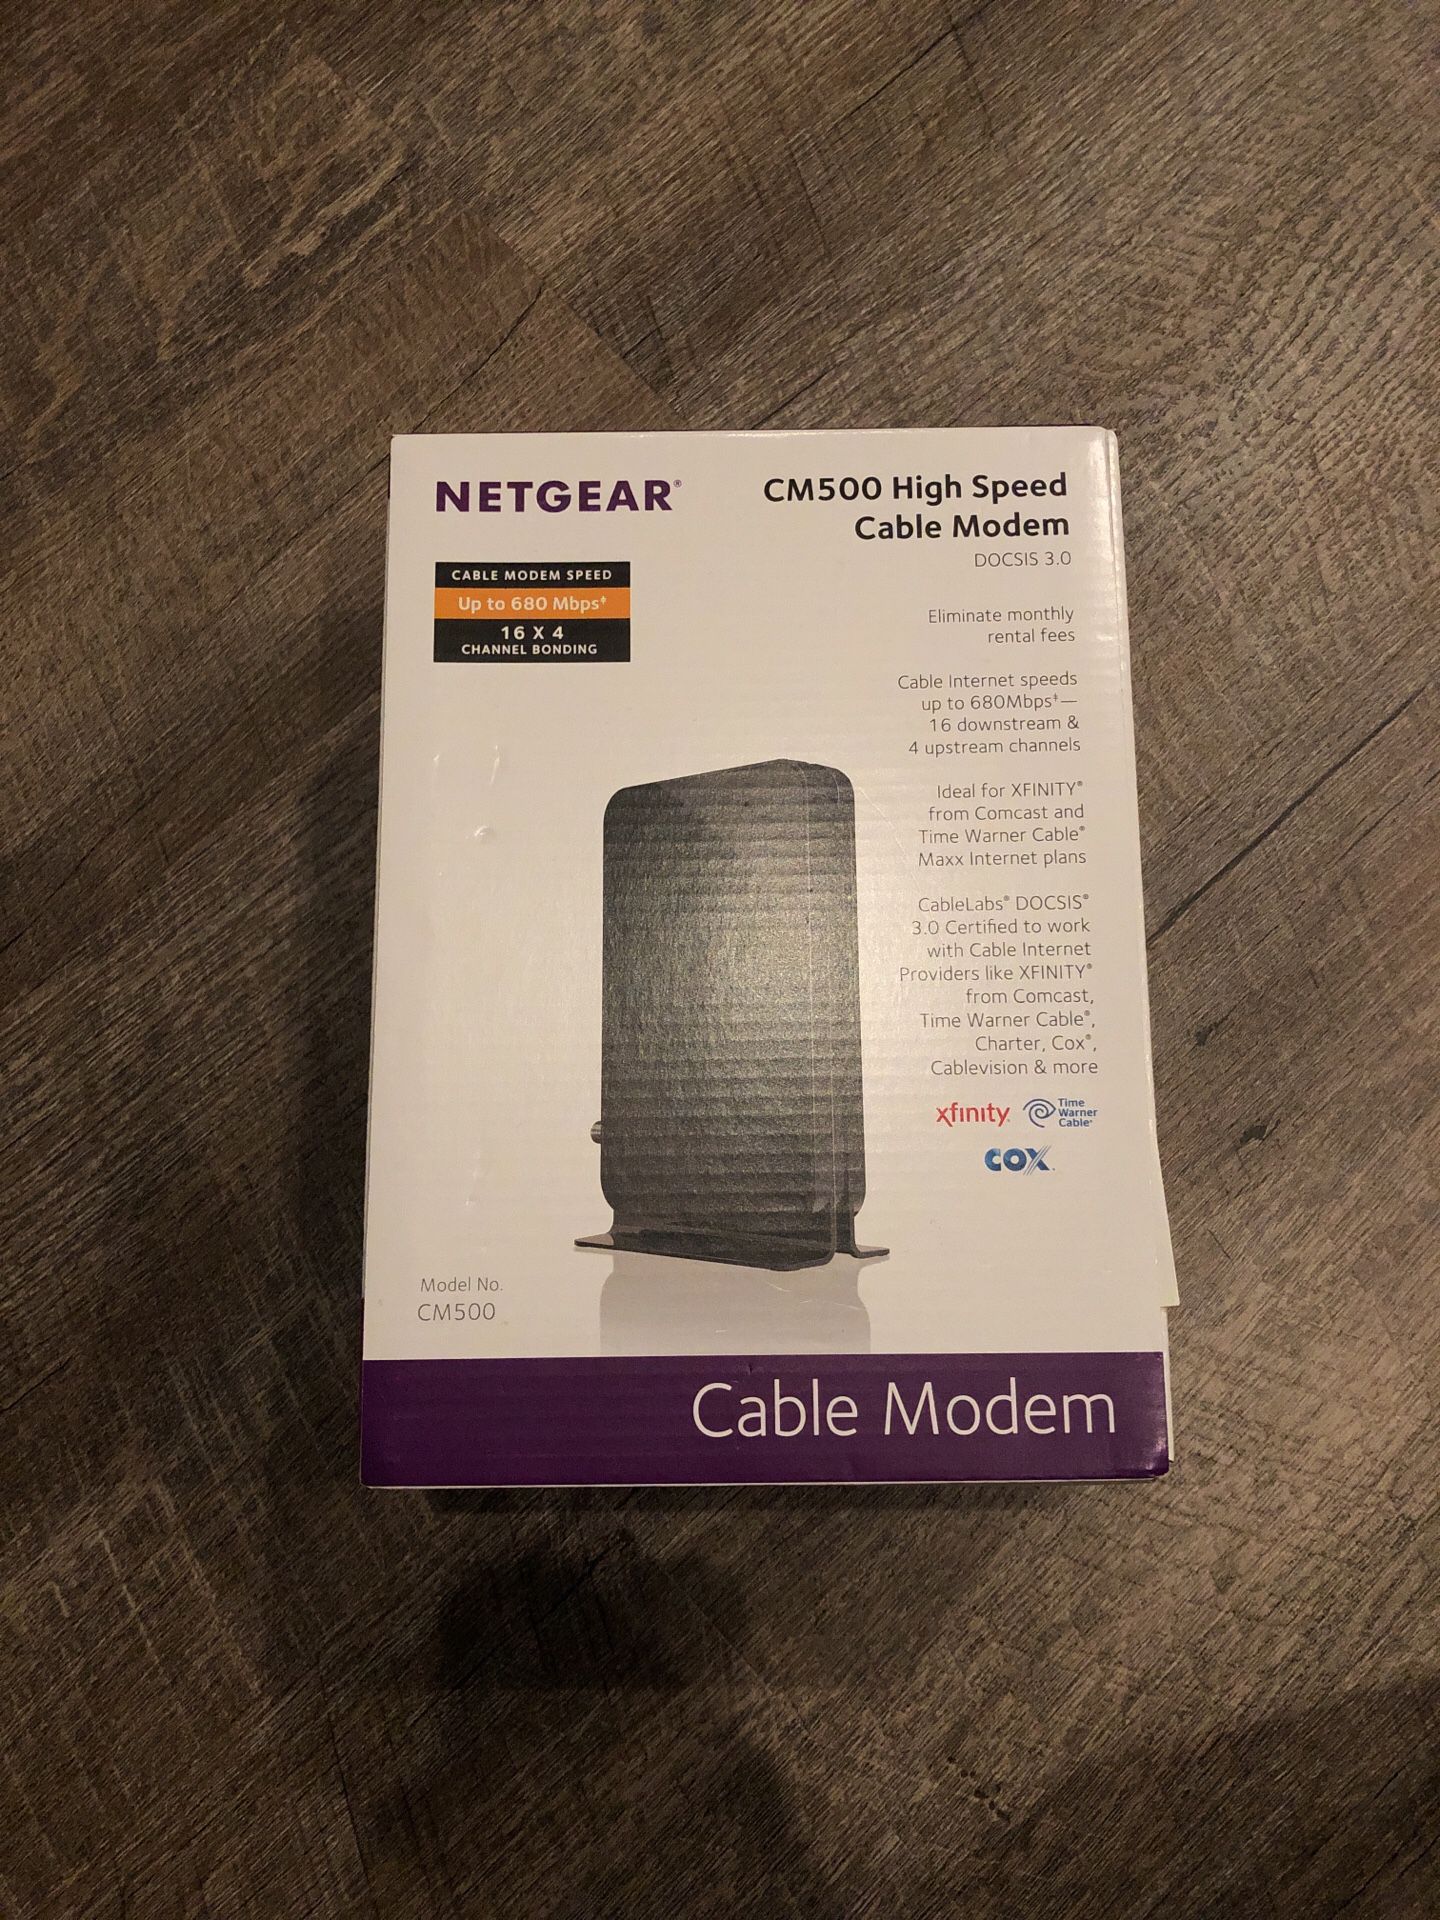 Netgear high speed cable modem CM500